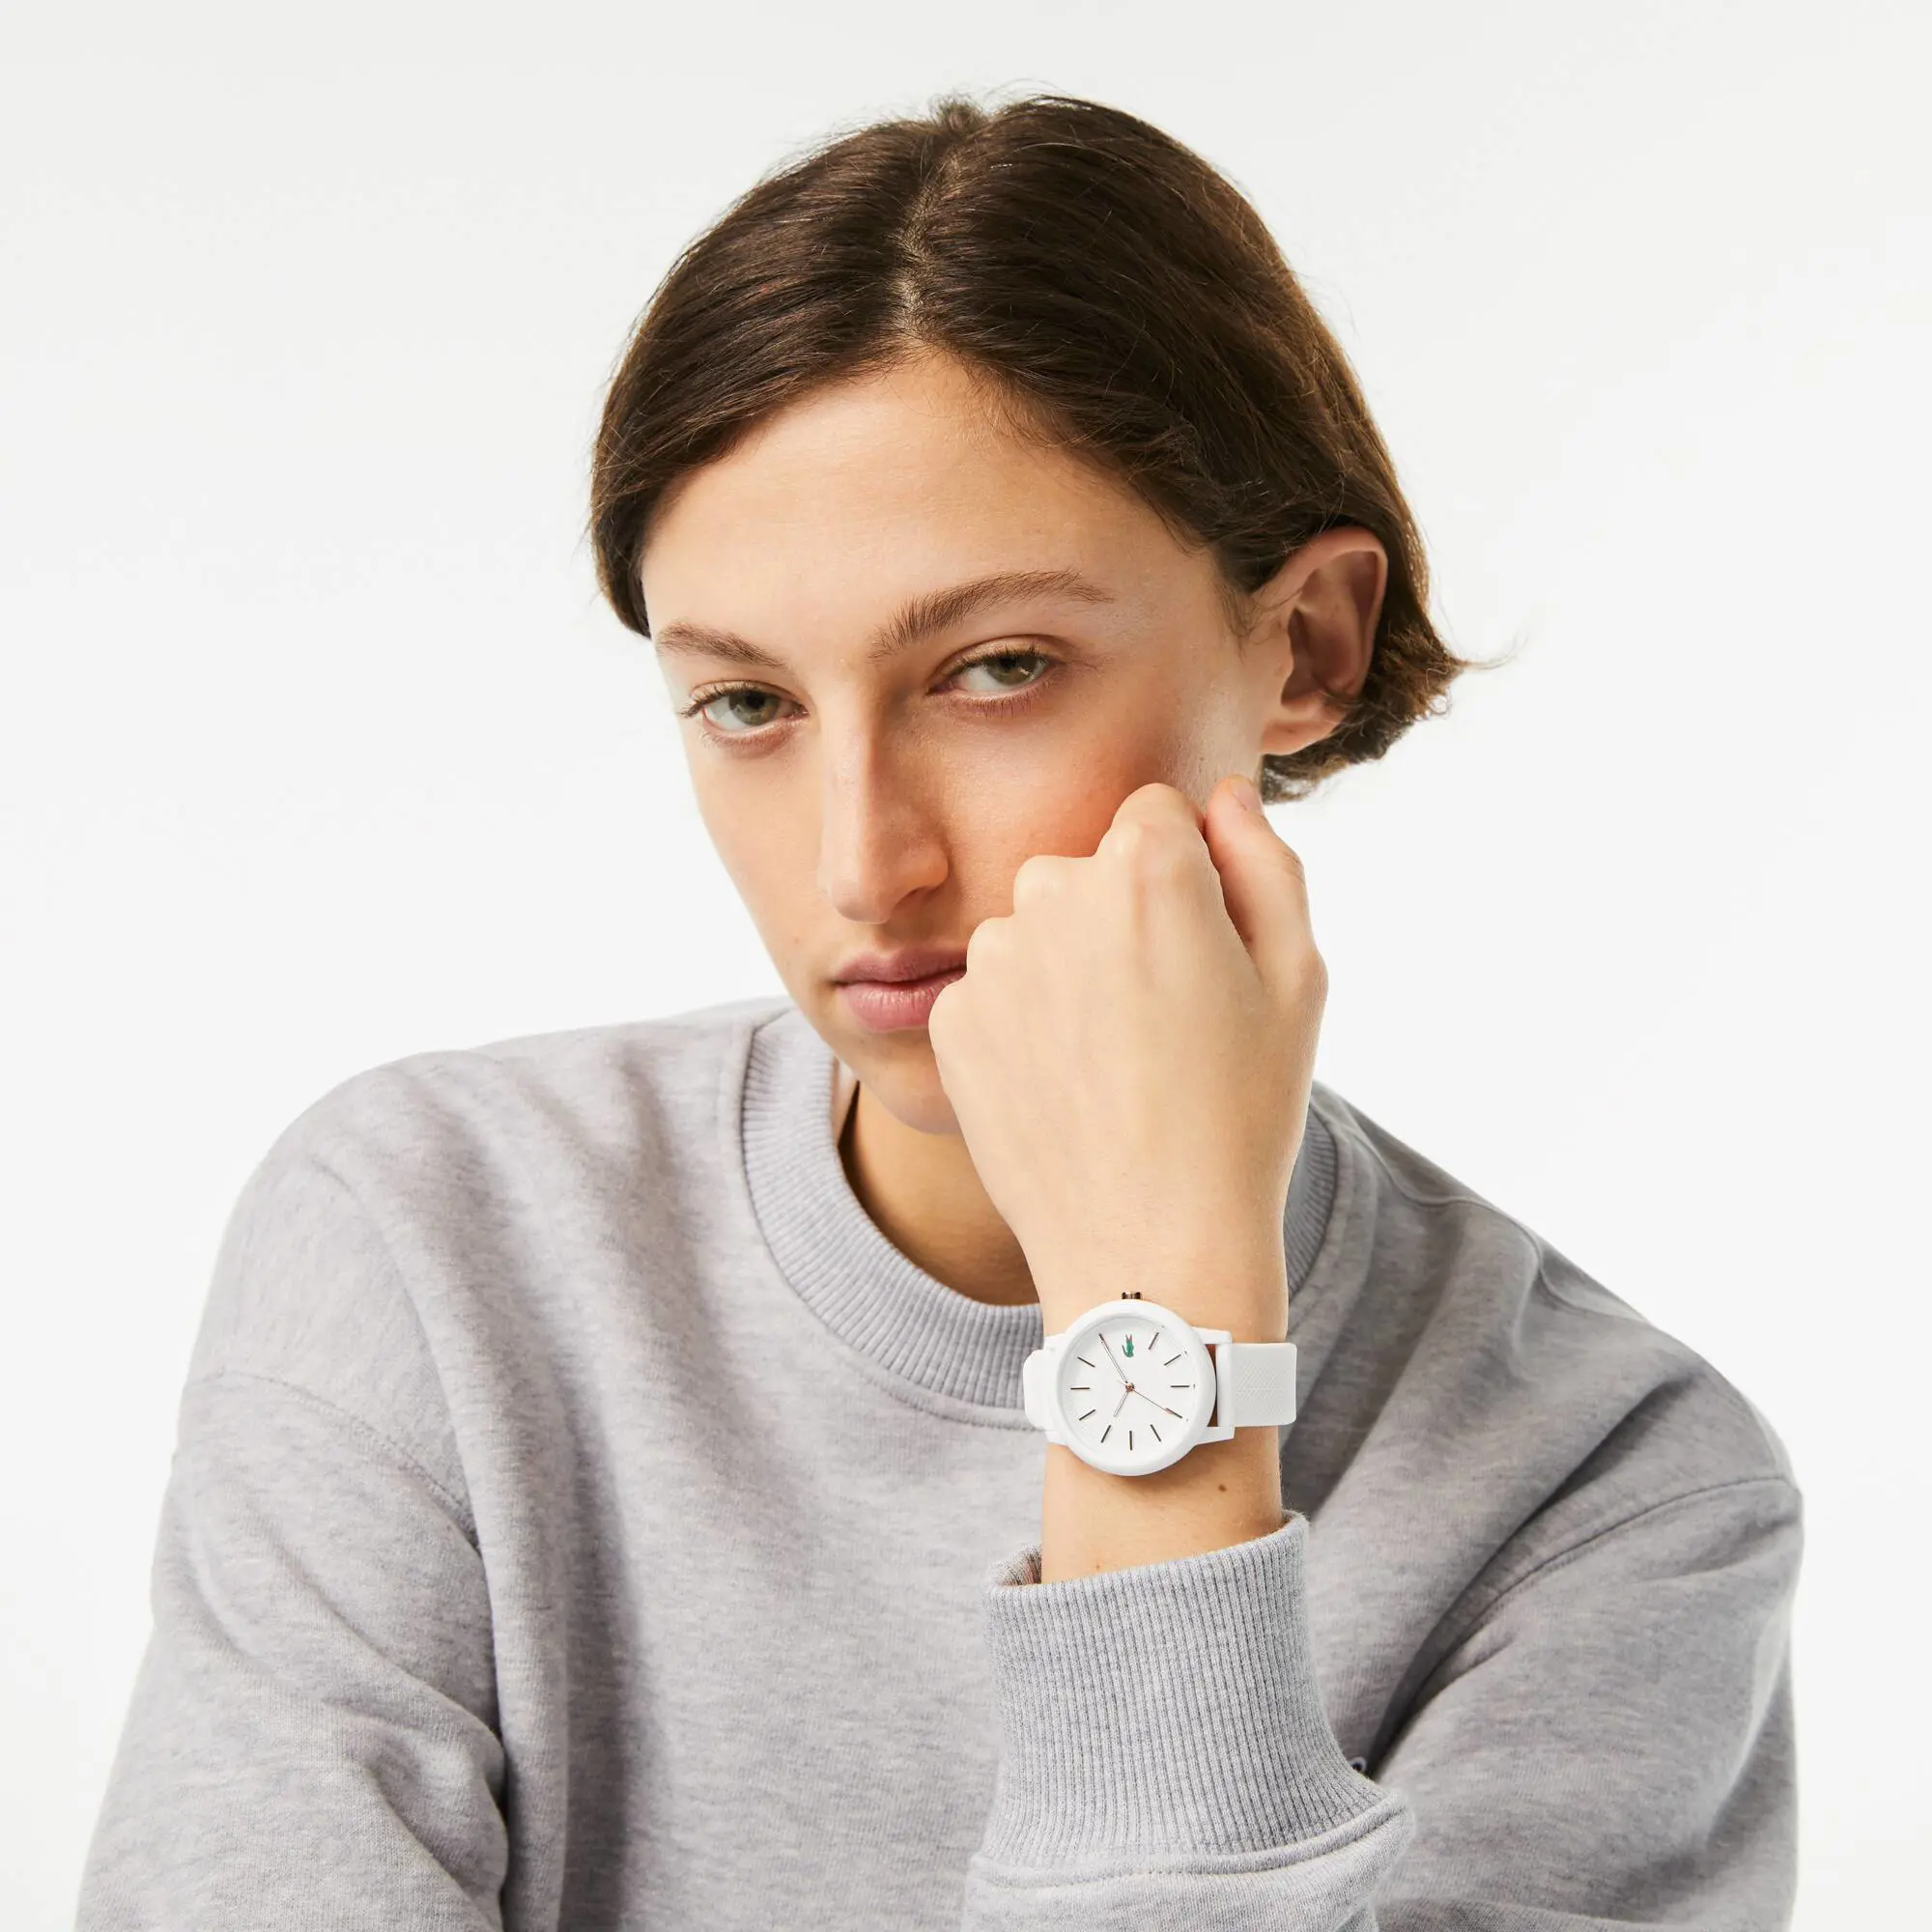 Lacoste Montre femme Lacoste.12.12 avec bracelet en silicone blanc. 1